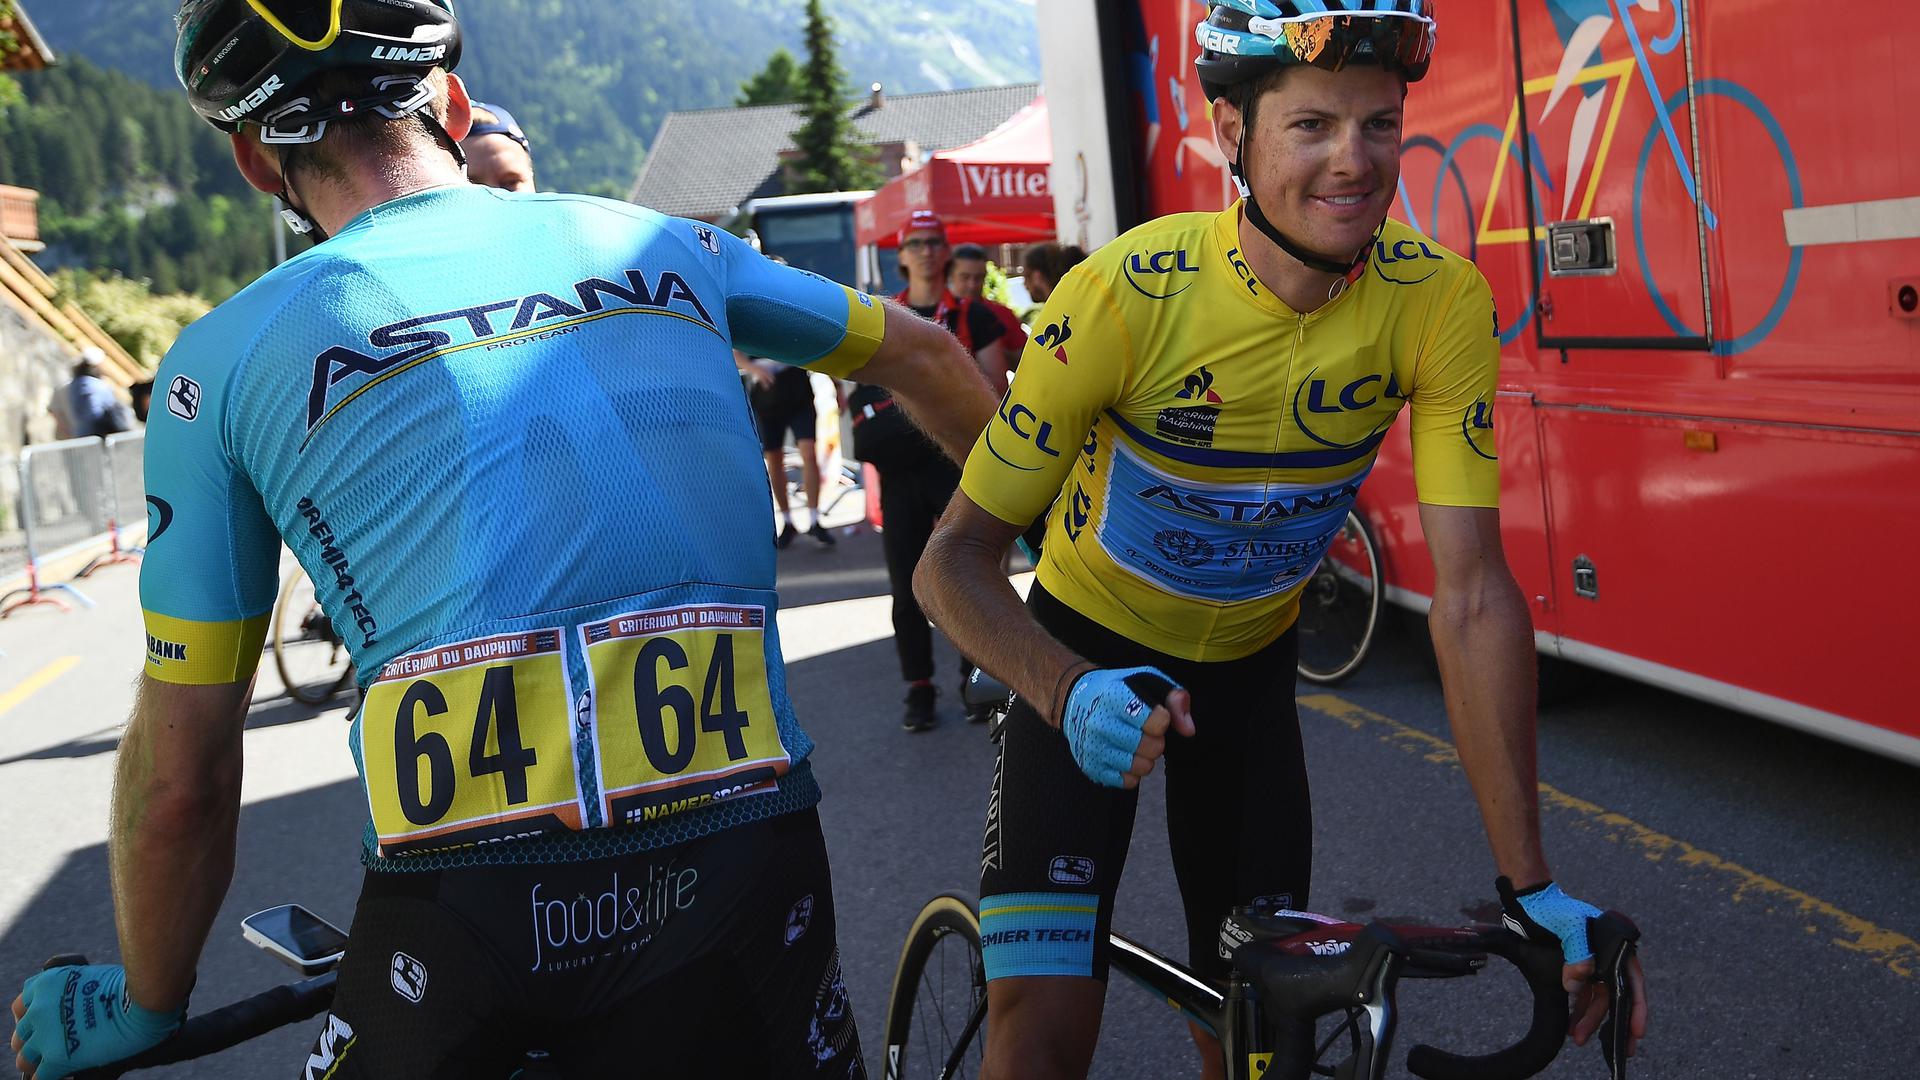 Jakob Fuglsang a tenu bon, se profilant comme un candidat sérieux à la victoire dans le Tour de France qui débute dans trois semaines.